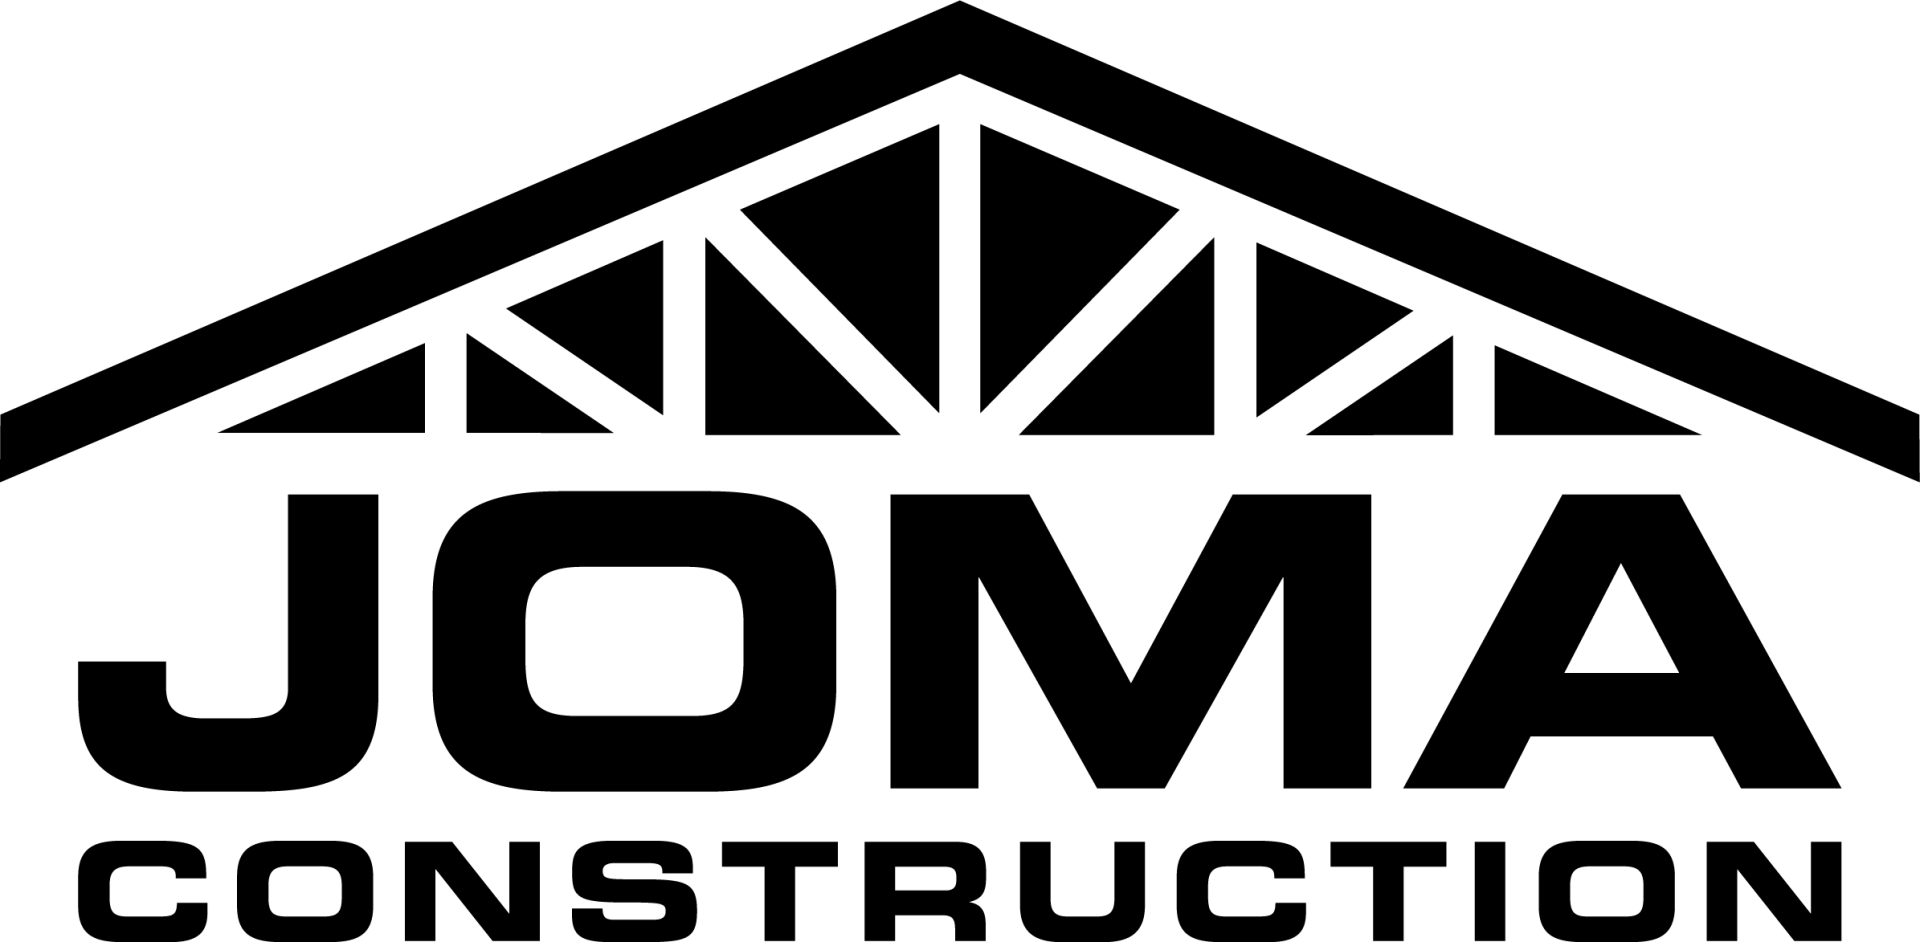 JOMA Construction Logo